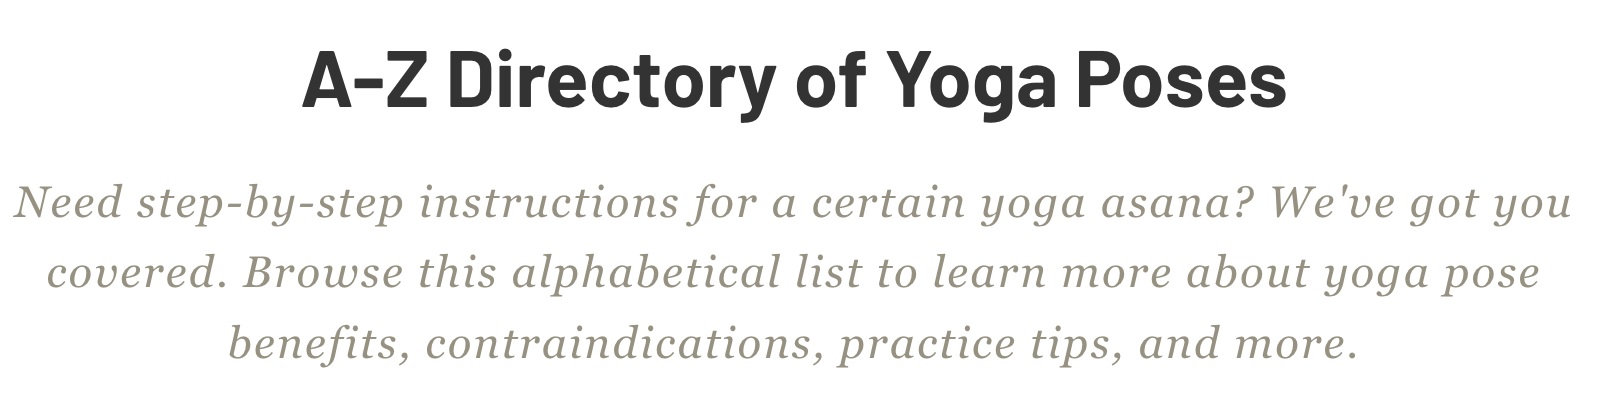 Estratto della directory AZ delle posizioni yoga